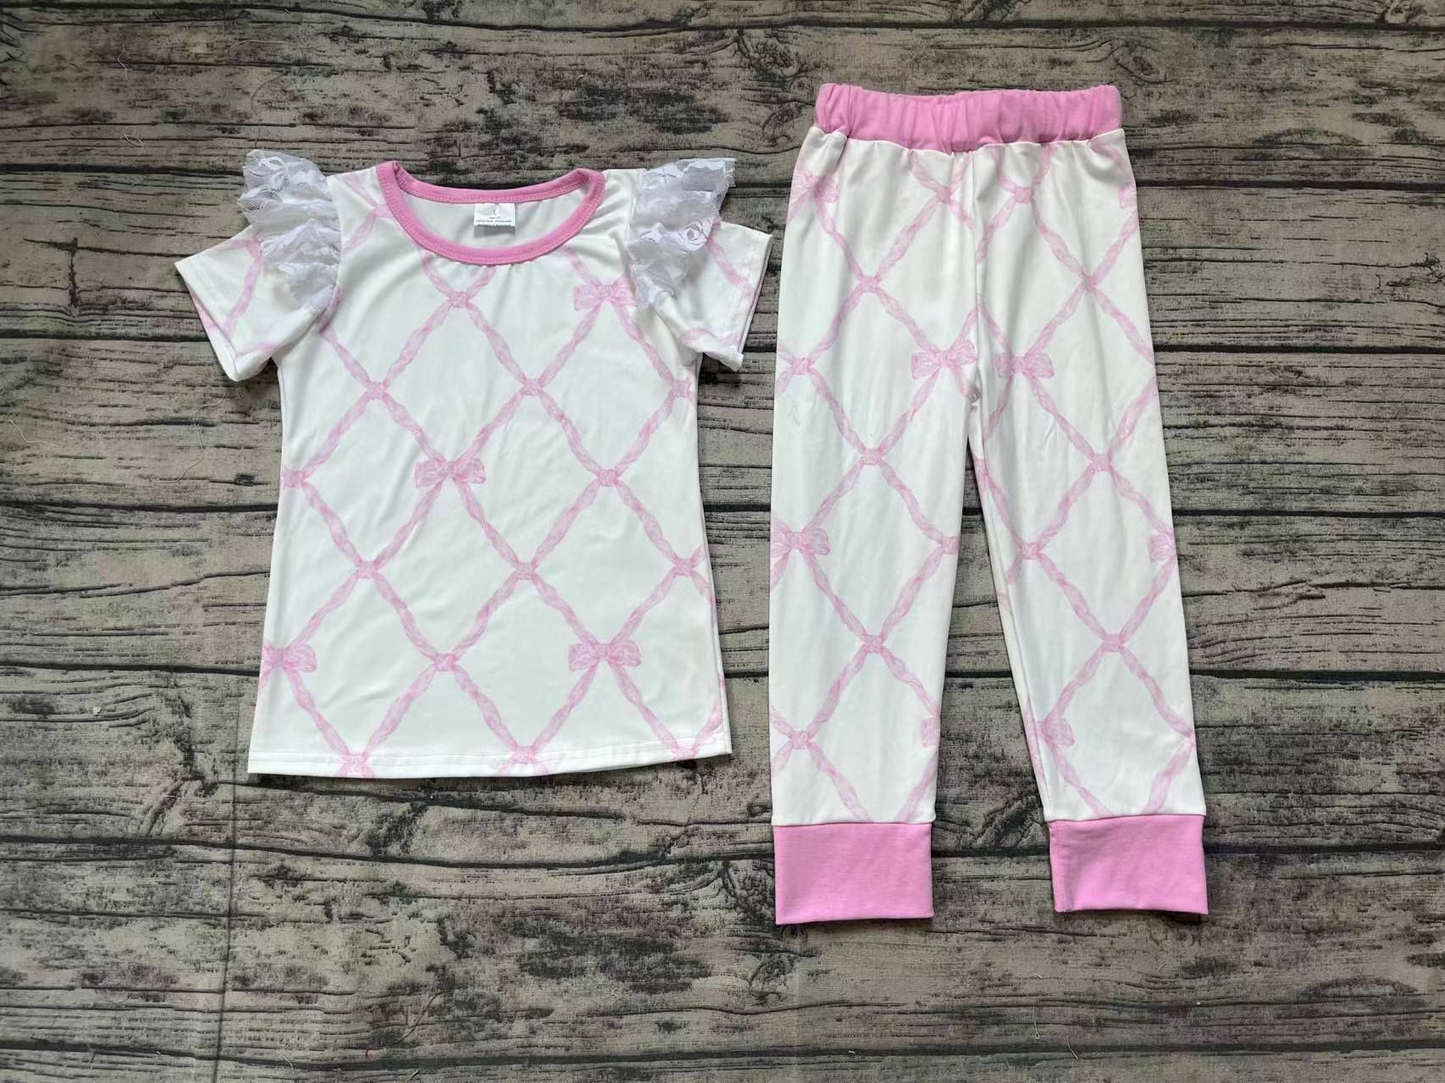 GSPO1517 Bamboo Pink Bows Shirt Pants Pajamas Clothes Sets